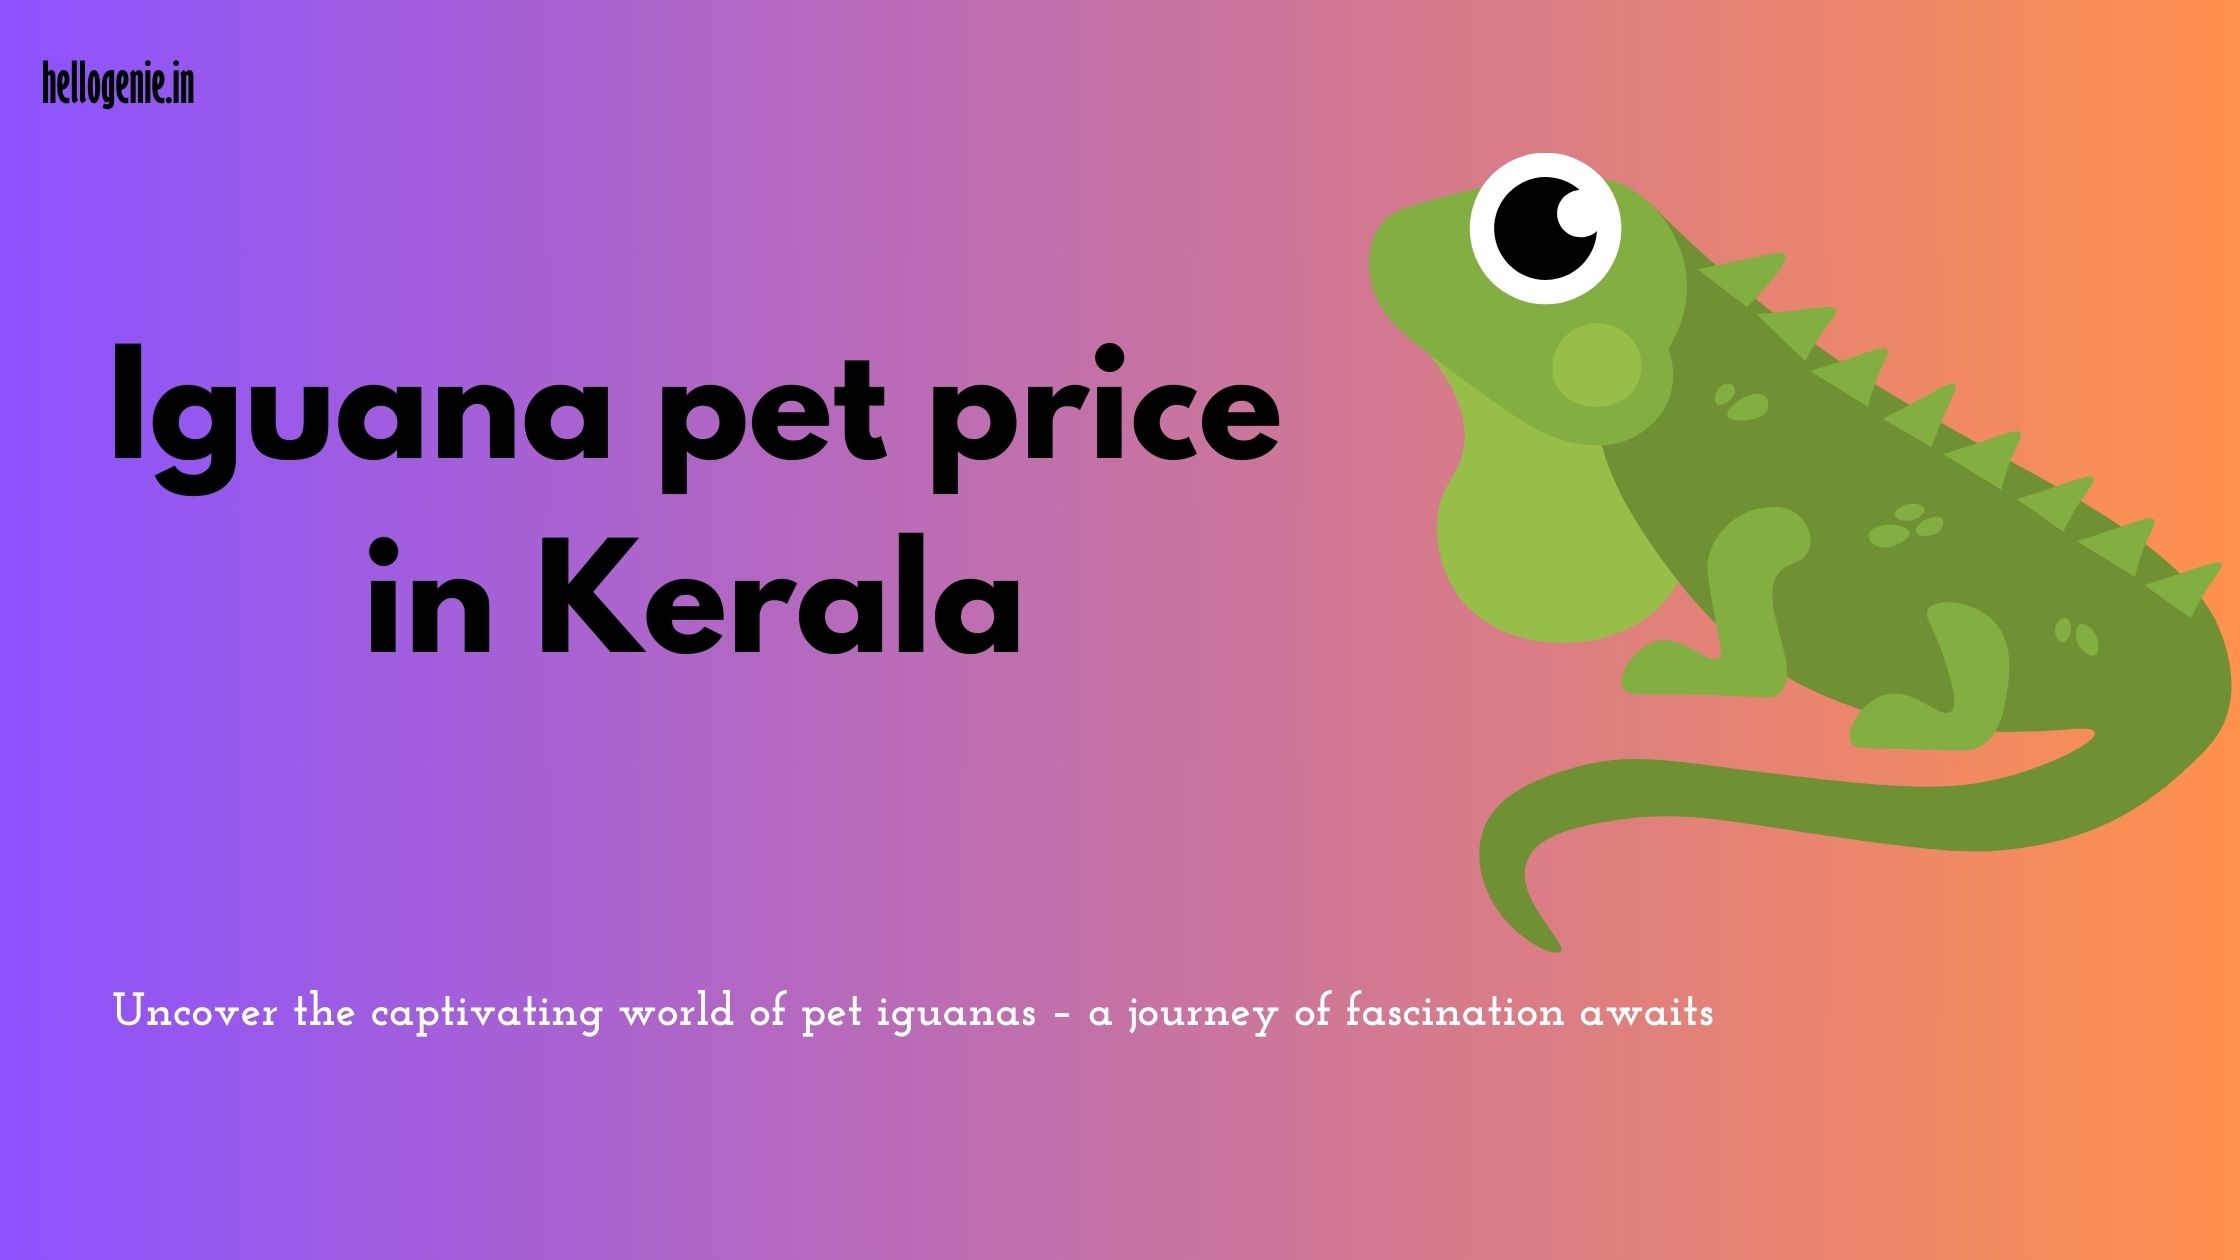 Iguana pet price in Kerala